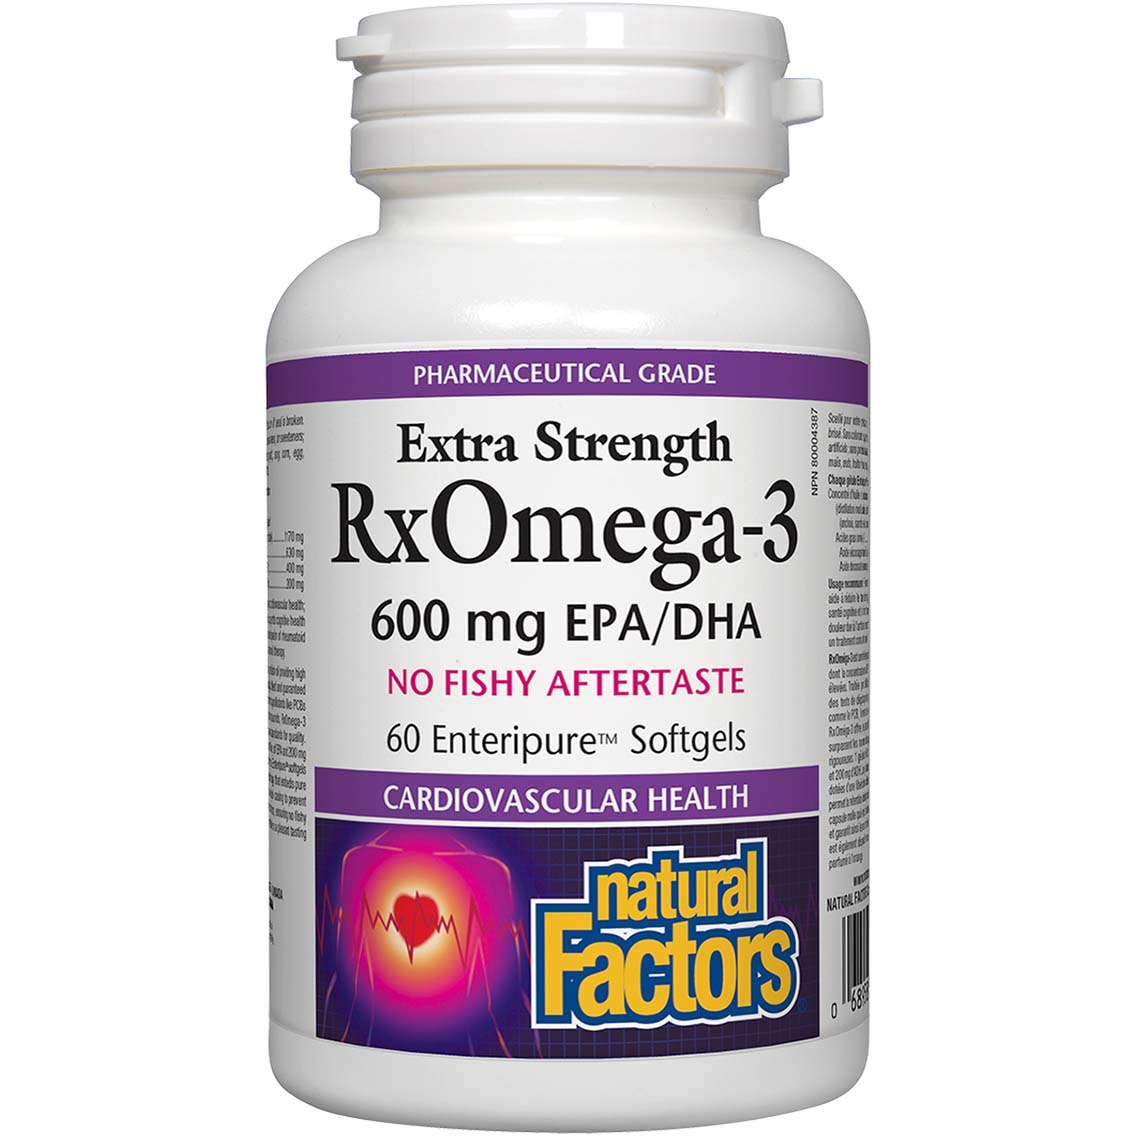 Natural Factors Extra Strength RxOmega-3 60 Softgels 600 mg